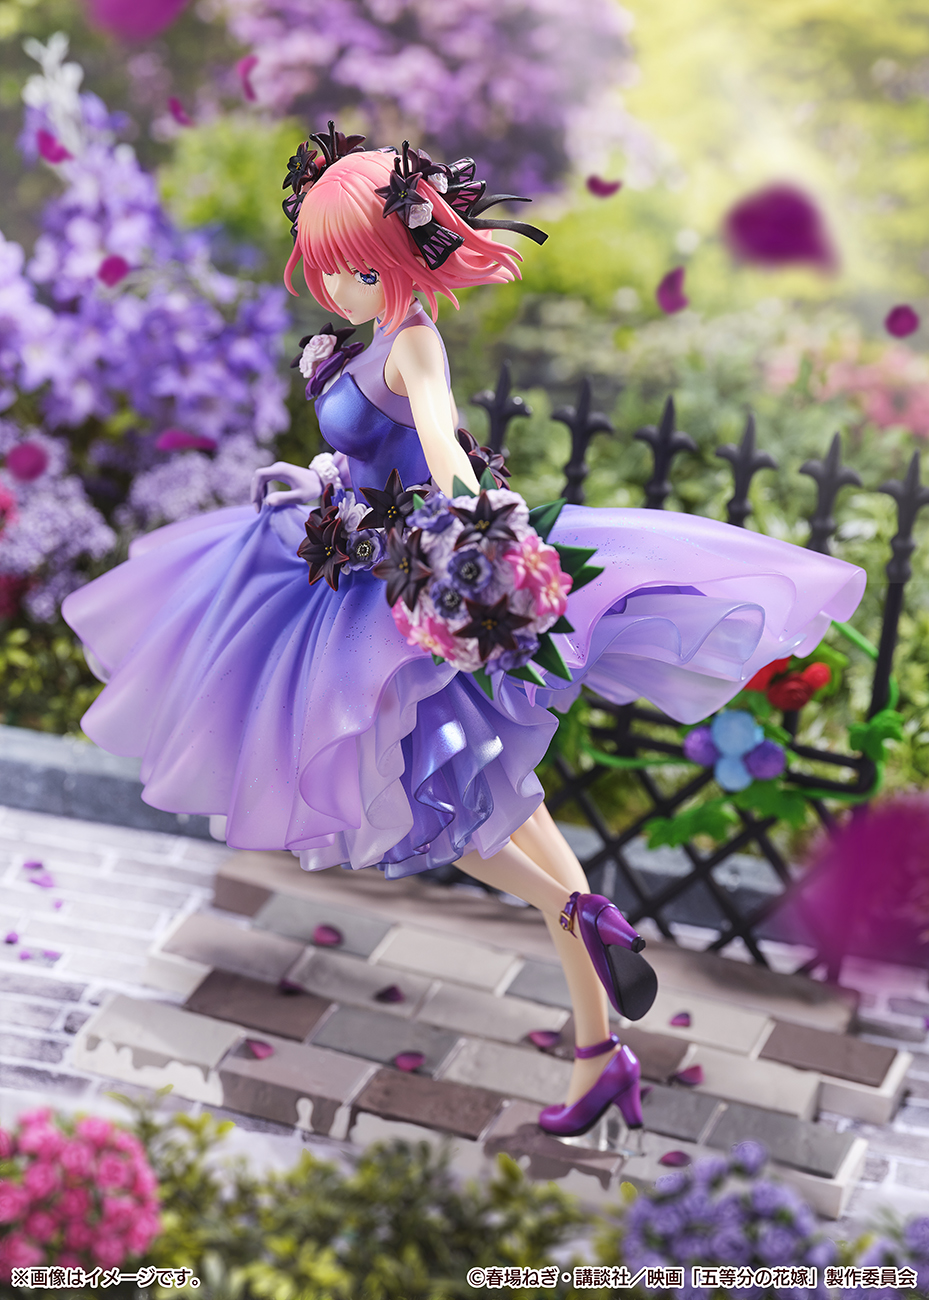 映画「五等分の花嫁」「中野 二乃 -Floral Dress Ver.-」のフィギュア画像